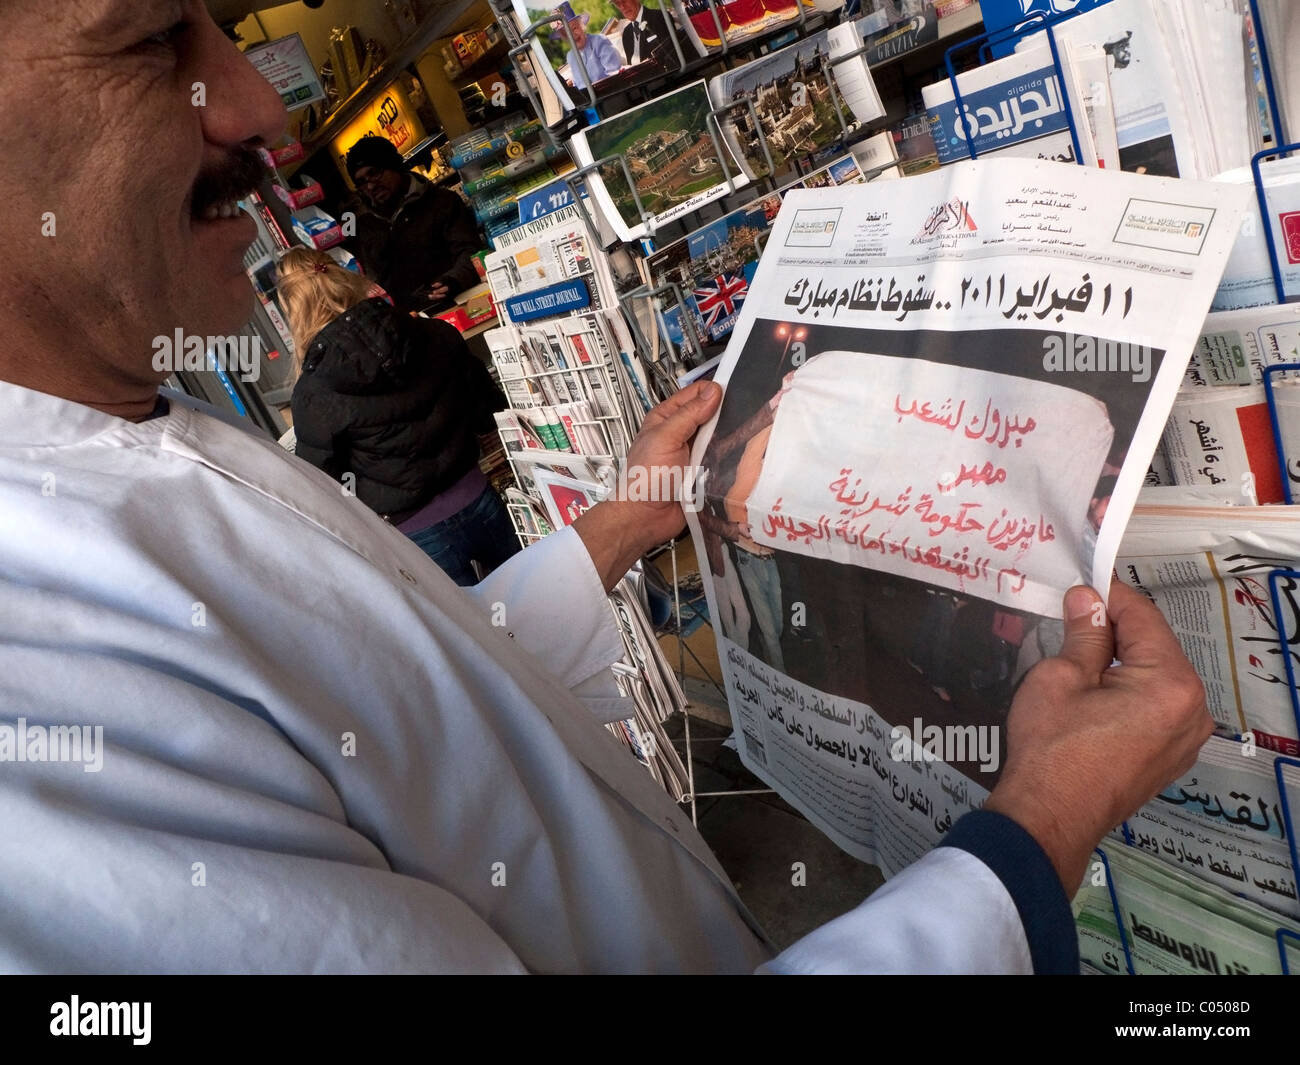 Uomo arabo lettura 12 febbraio 2011 quotidiano egiziano titolo Al-Ahram celebrando la vittoria per i manifestanti in Egitto, la Primavera araba Londra UK. KATHY DEWITT Foto Stock